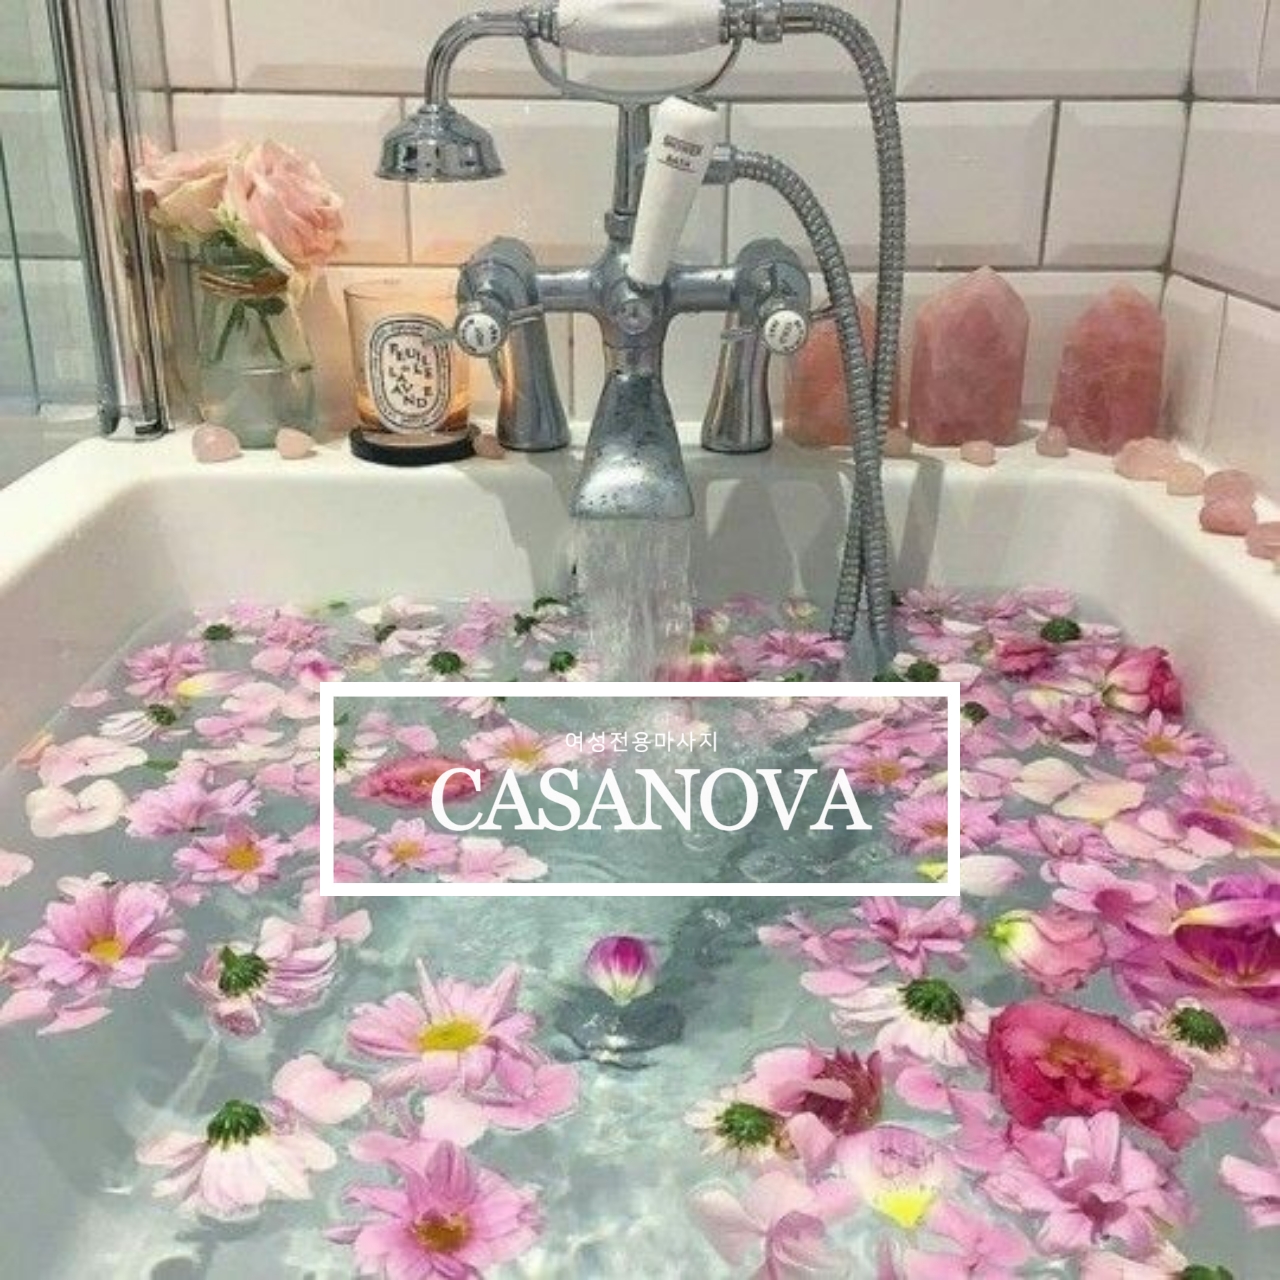 욕조에 아름다운 형형색색의 꽃들이 물에서 움직이는사진